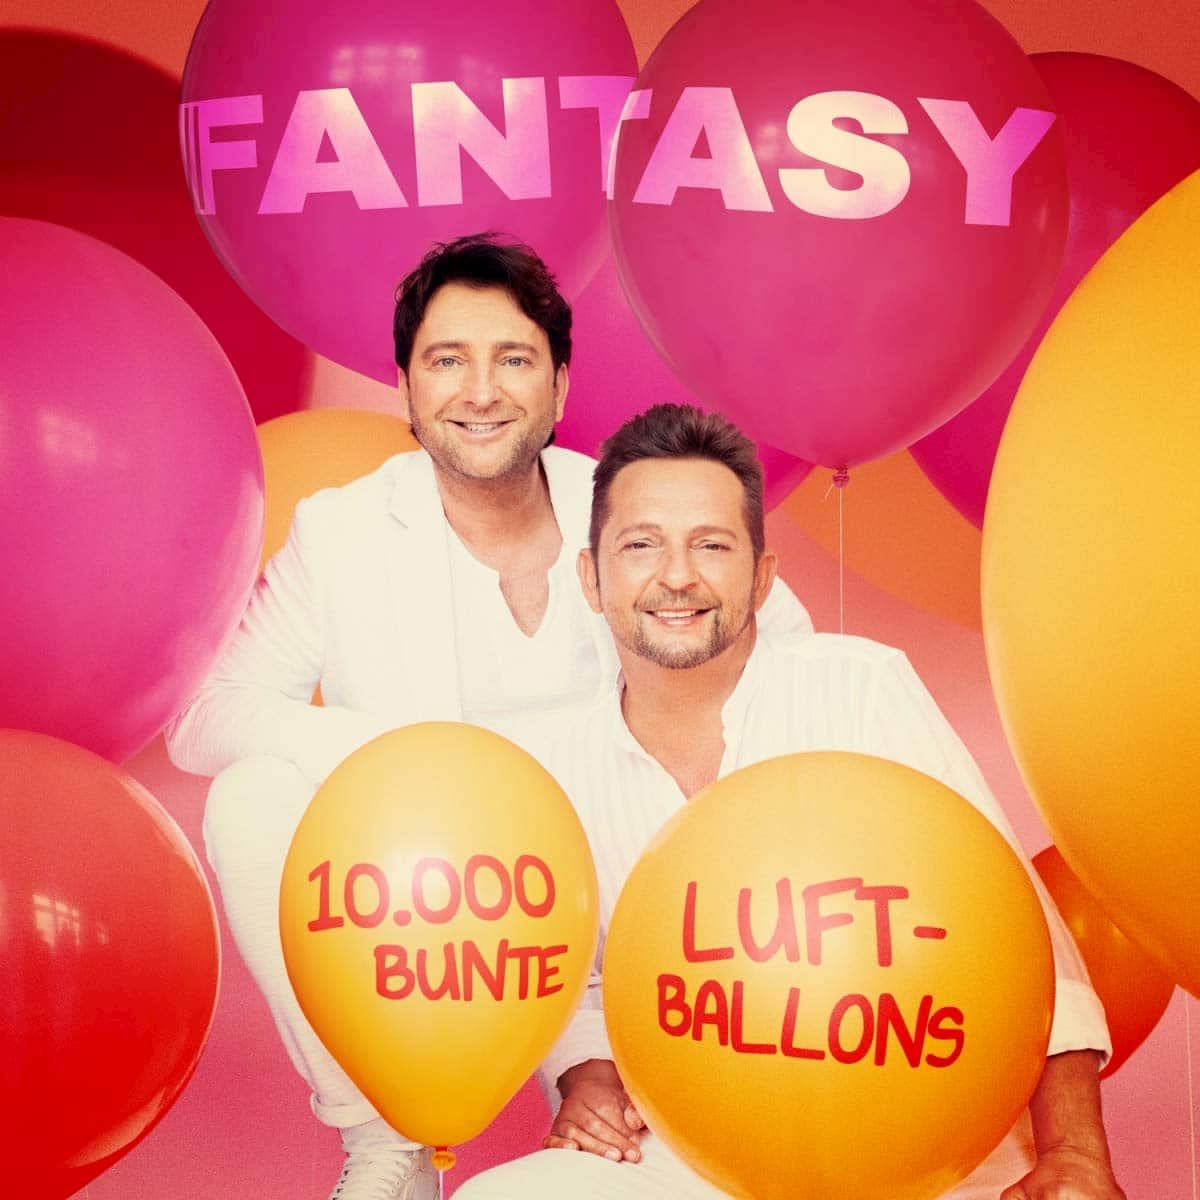 Fantasy Neue CD "10.000 Bunte Luftballons"